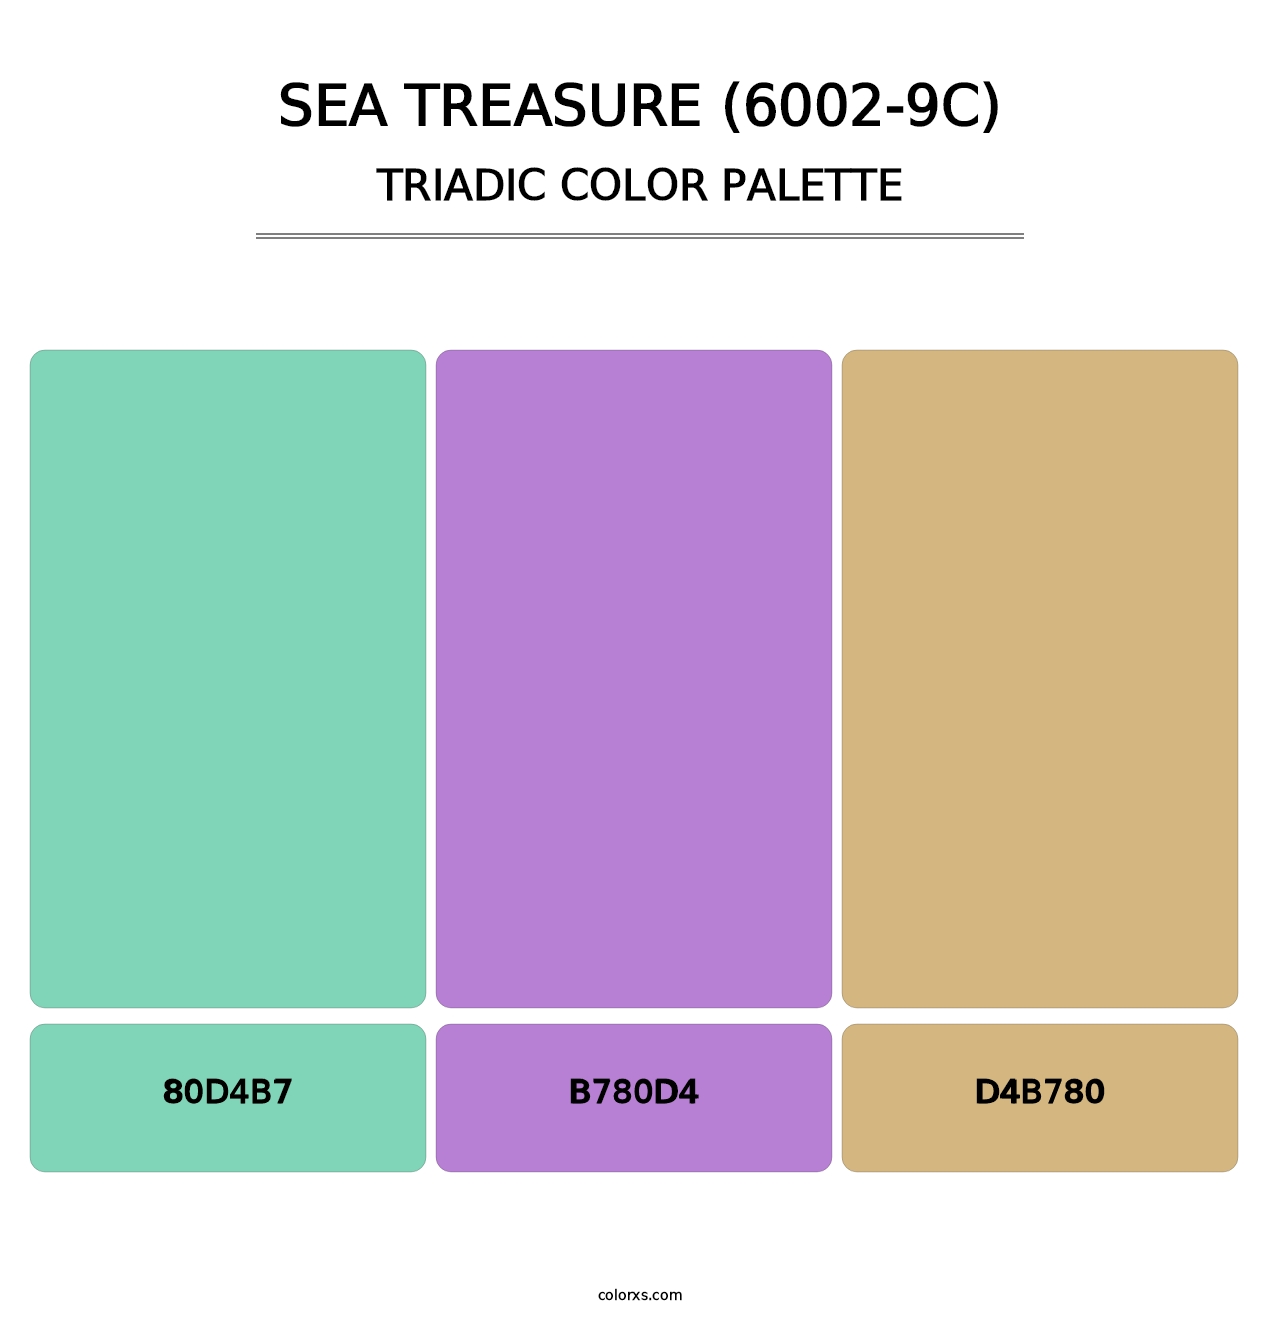 Sea Treasure (6002-9C) - Triadic Color Palette